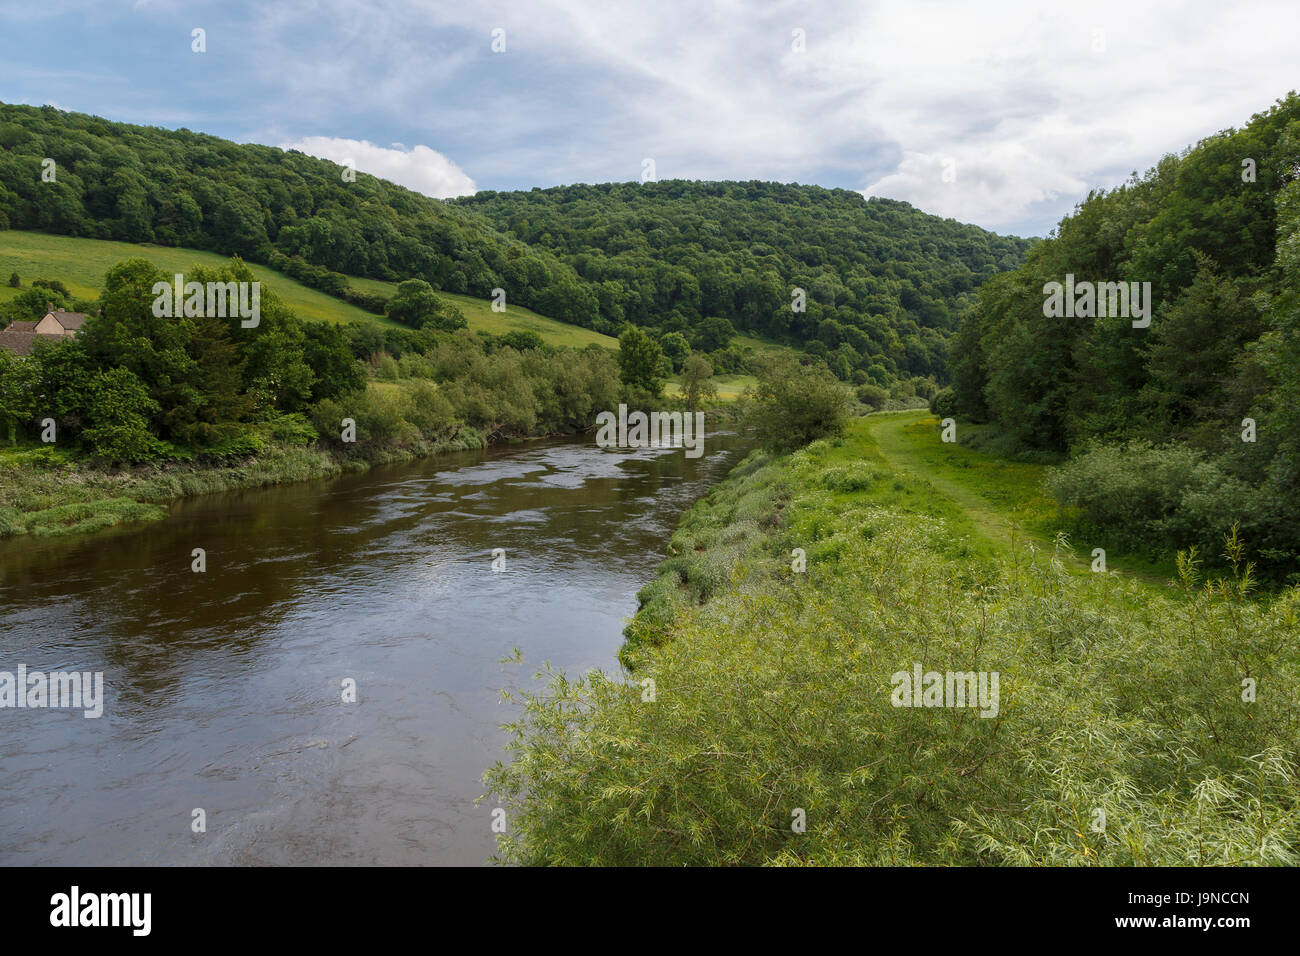 Fiume Wye a Brockweir, al confine del Galles e Inghilterra. Il memorandum di Wye Valley a piedi è a ovest (a destra) banca del fiume. Foto Stock